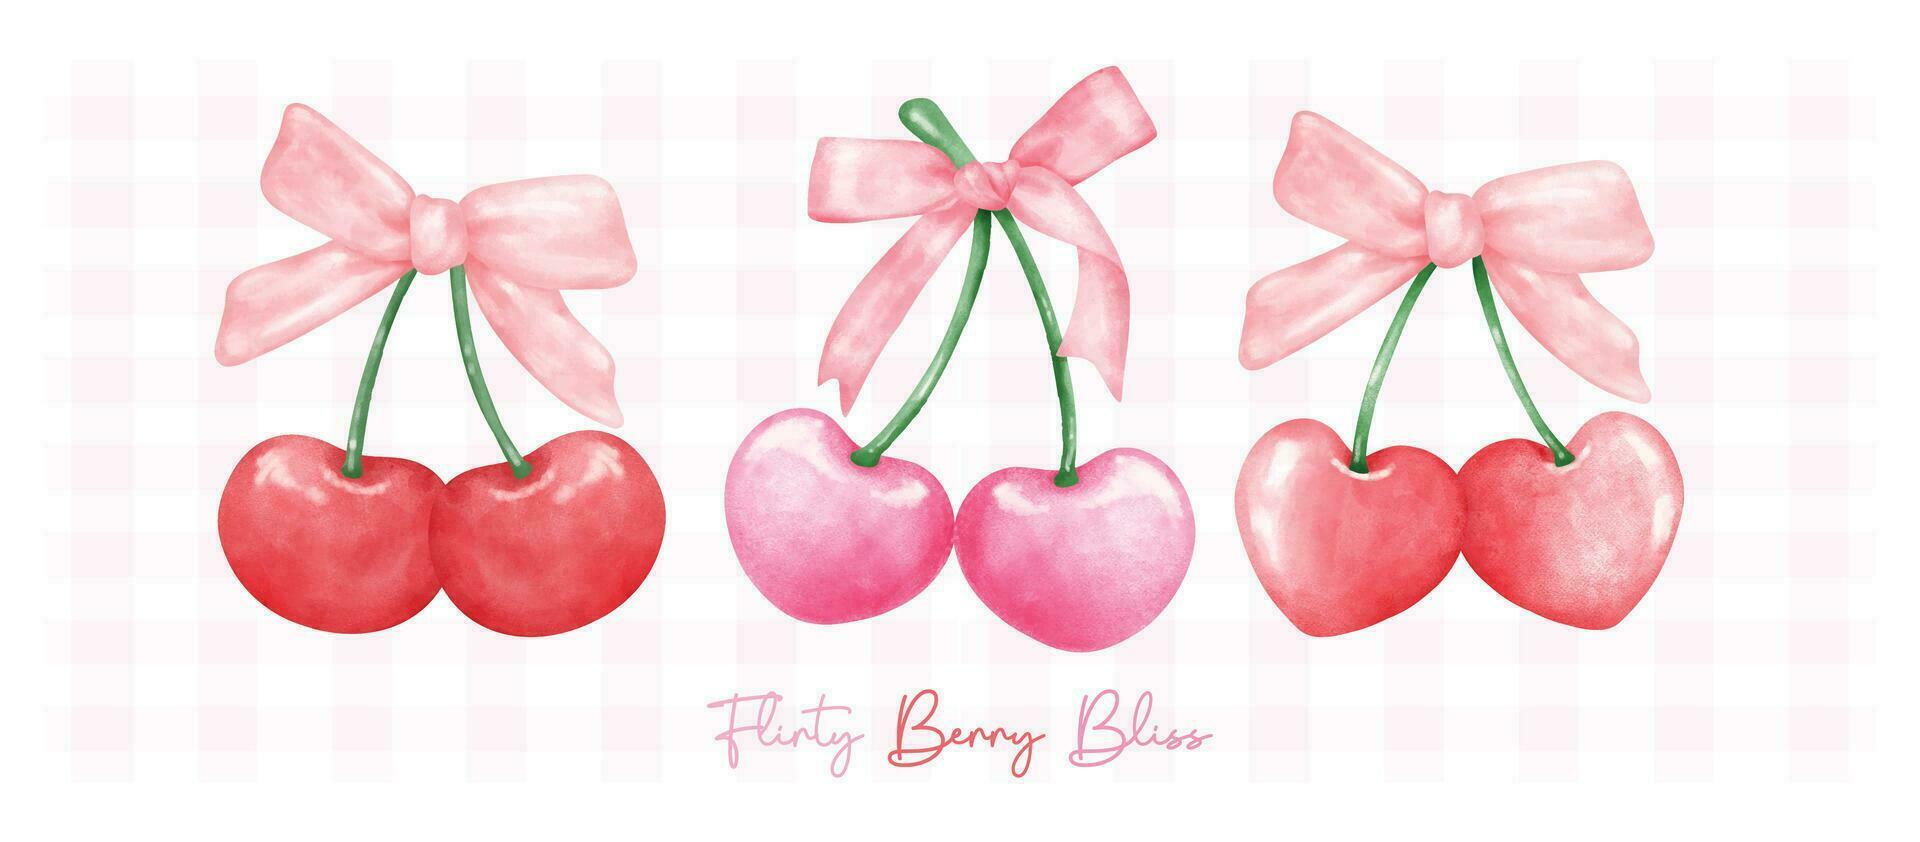 grupo de rojo y caliente rosado coqueta cerezas con cinta arco, estético acuarela mano dibujo bandera. vector